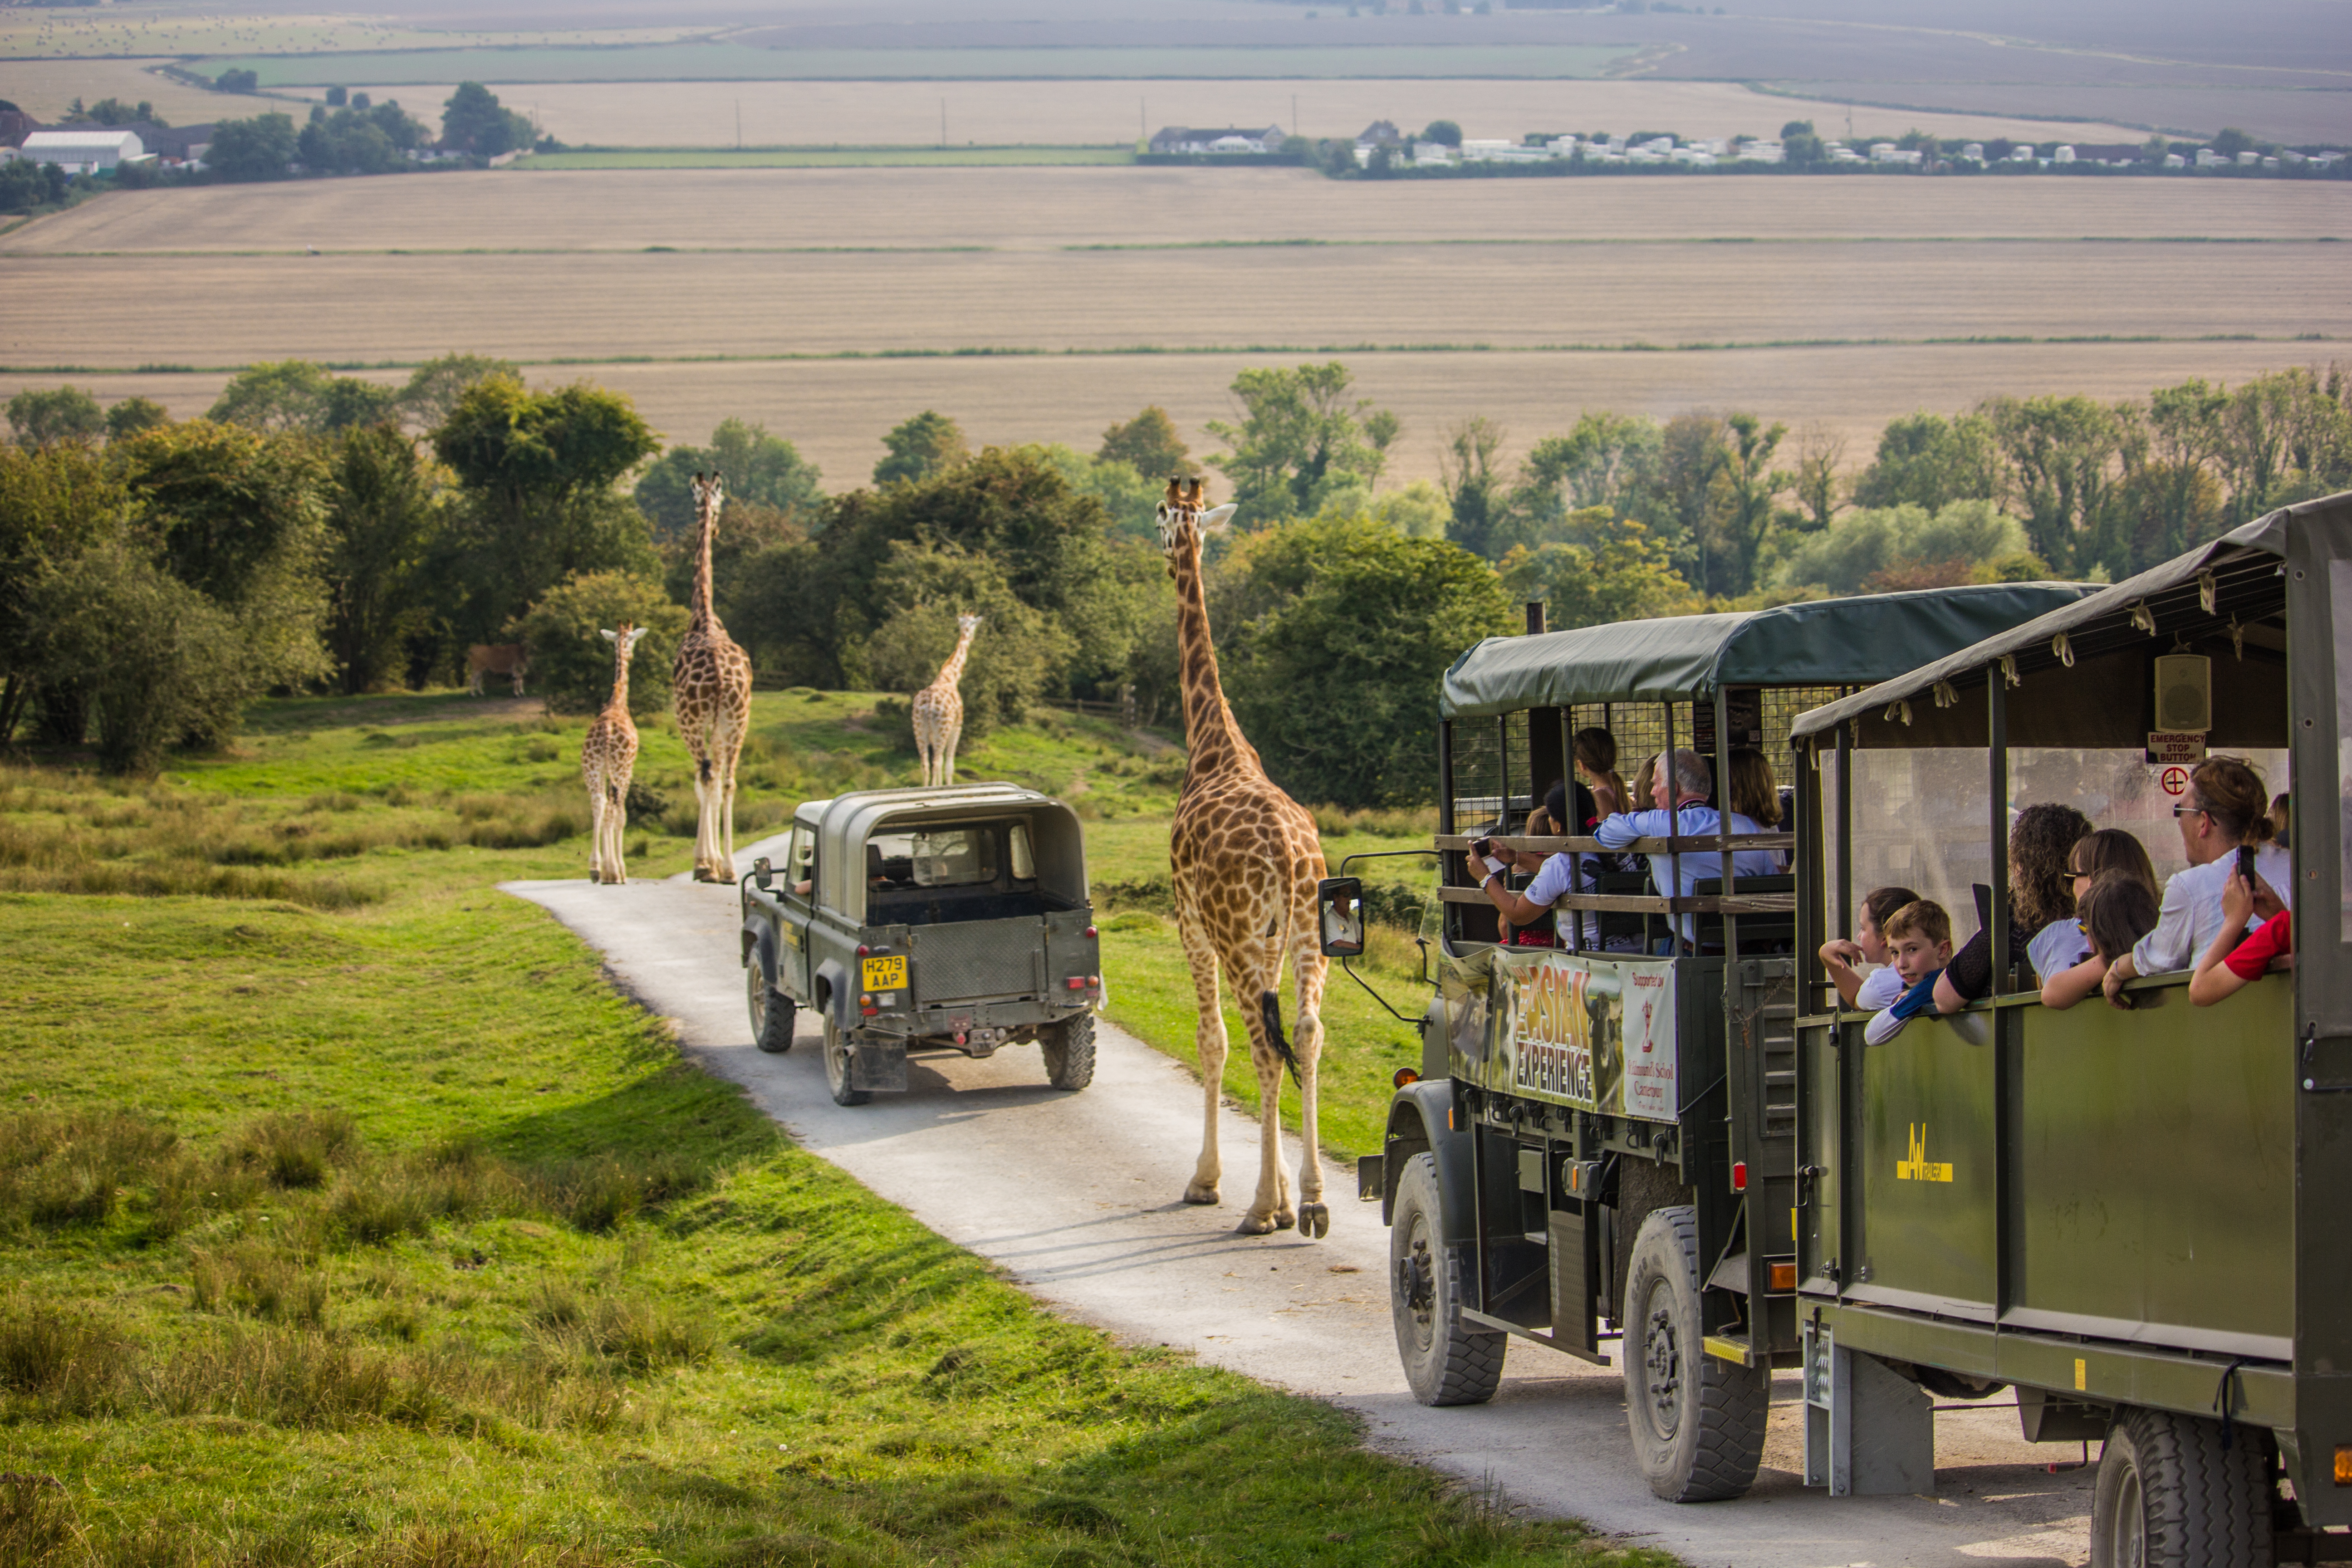 Zbliż się do wolno żyjących żyraf, zebr i wielbłądów podczas dwudniowego pobytu w Port Lympne Hotel and Reserve w Kent